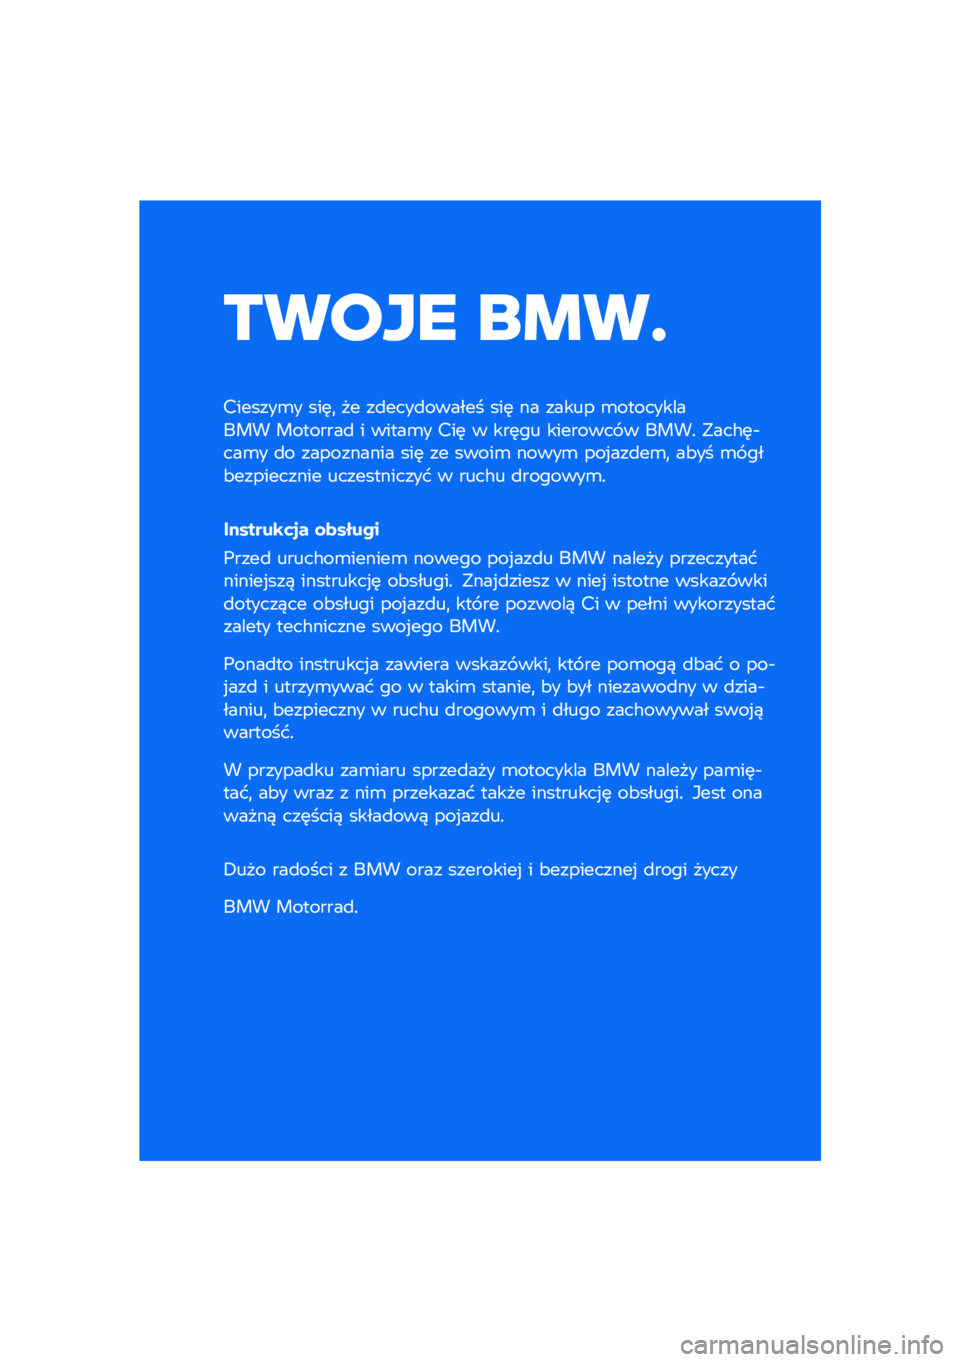 BMW MOTORRAD R NINE T SCRAMBLER 2021  Instrukcja obsługi (in Polish) ����� ��\b��	
�������\b� ���	�
 �� ��
����
������ ���	 �� ����� �\b����������� ��������
 � �����\b� ���	 � ���	�� �������� �